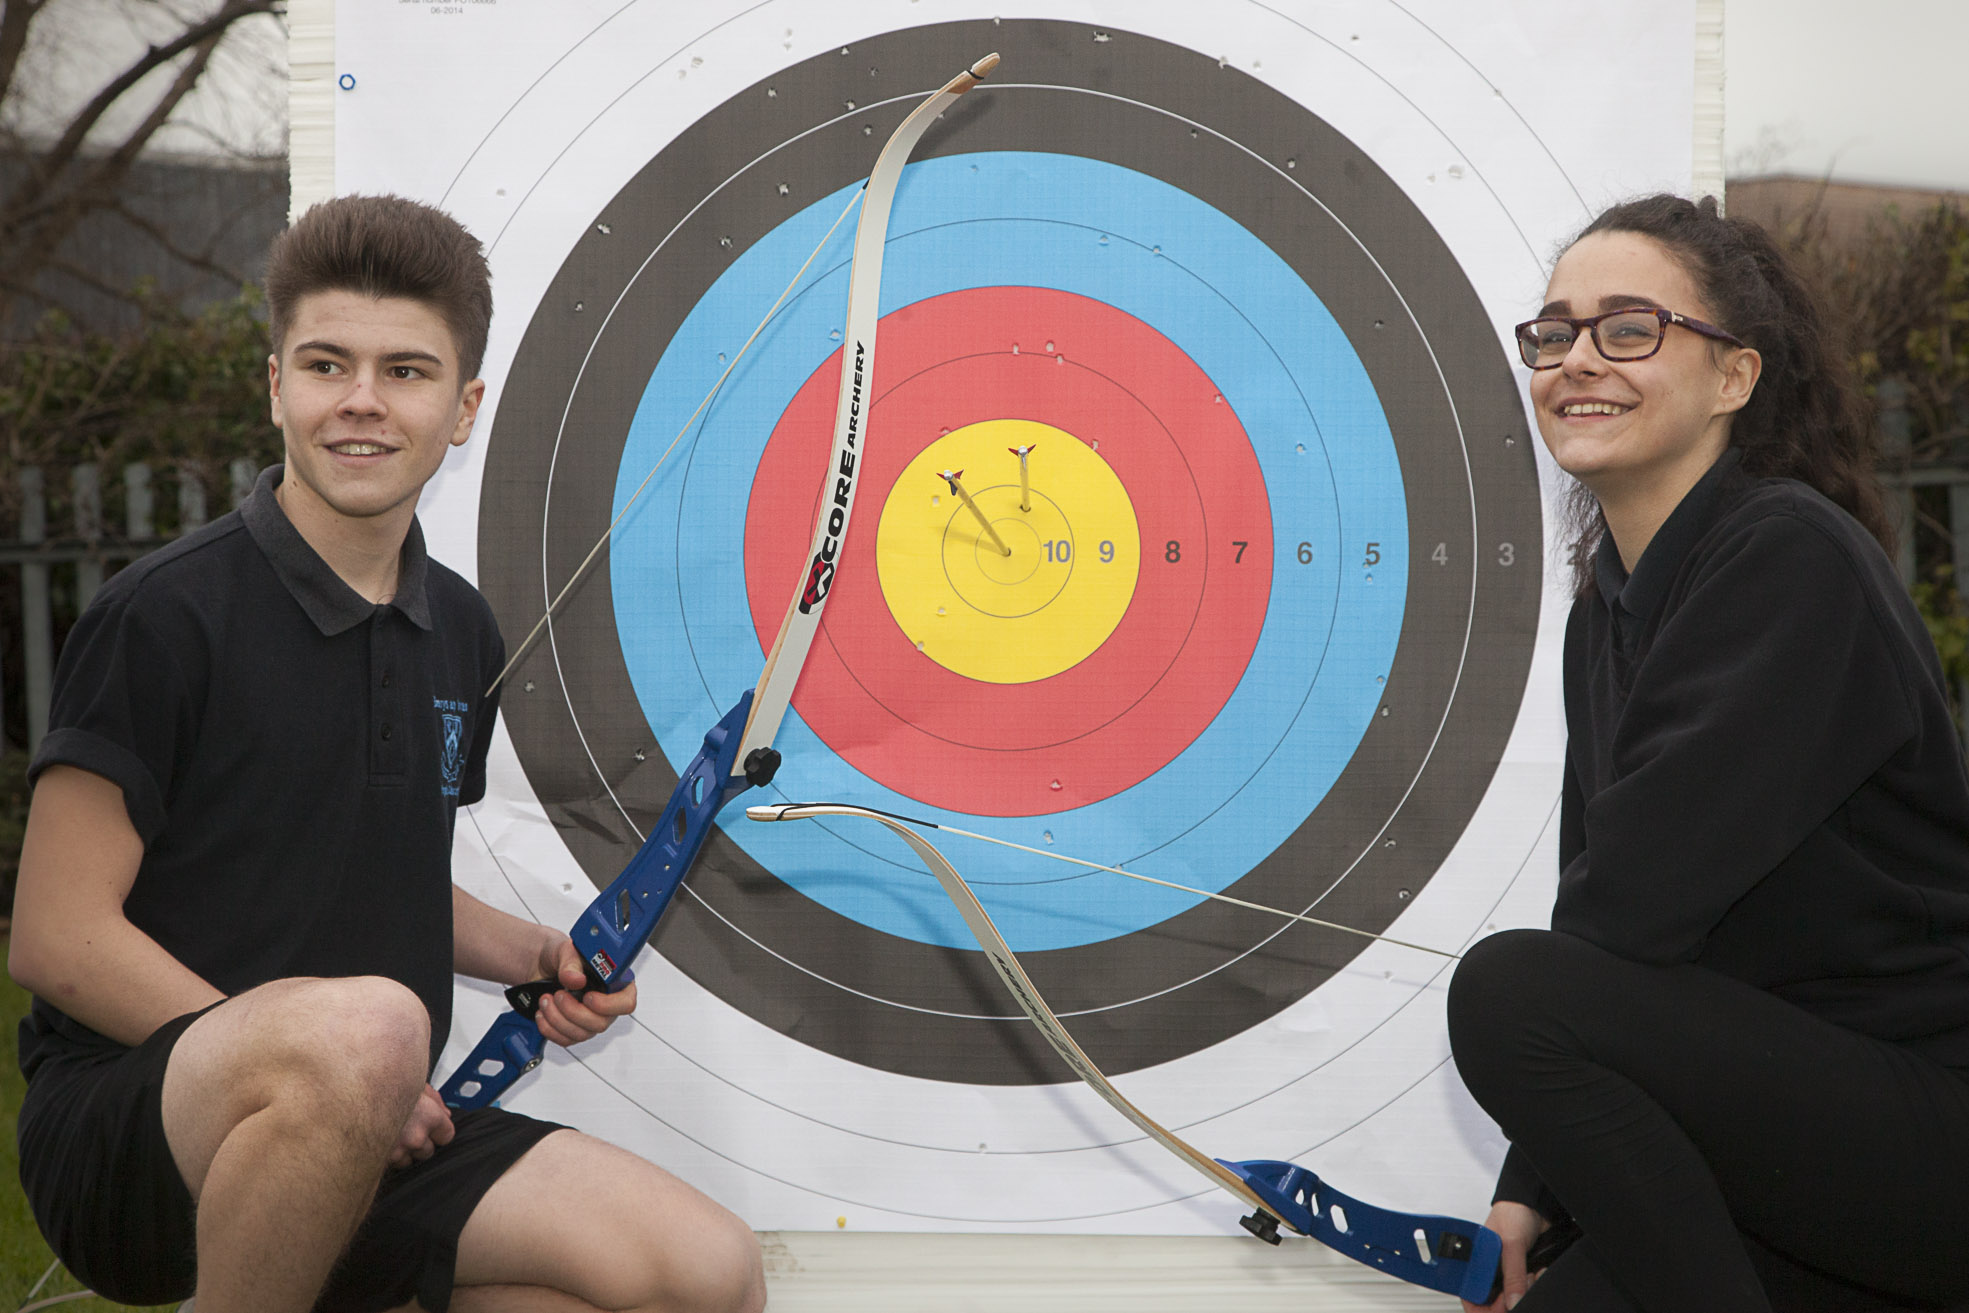 Abergele school on target with new archery club